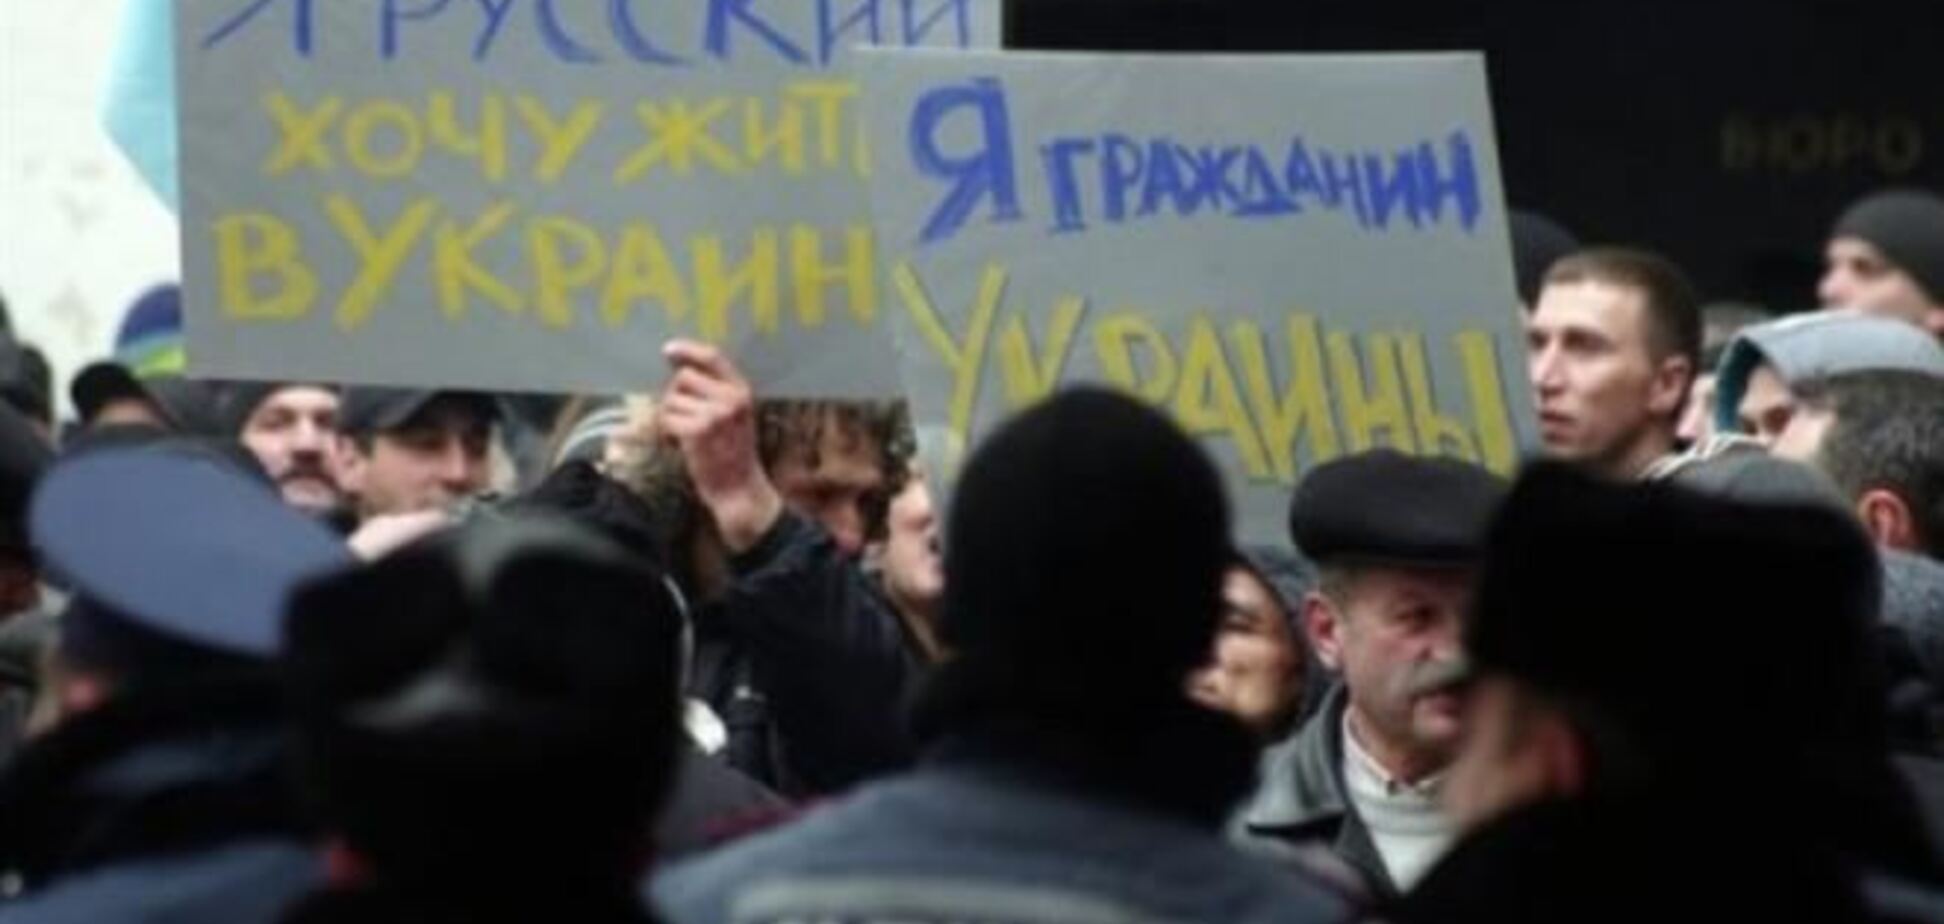 Кравчук радить кримчанам не брати участі в референдумі